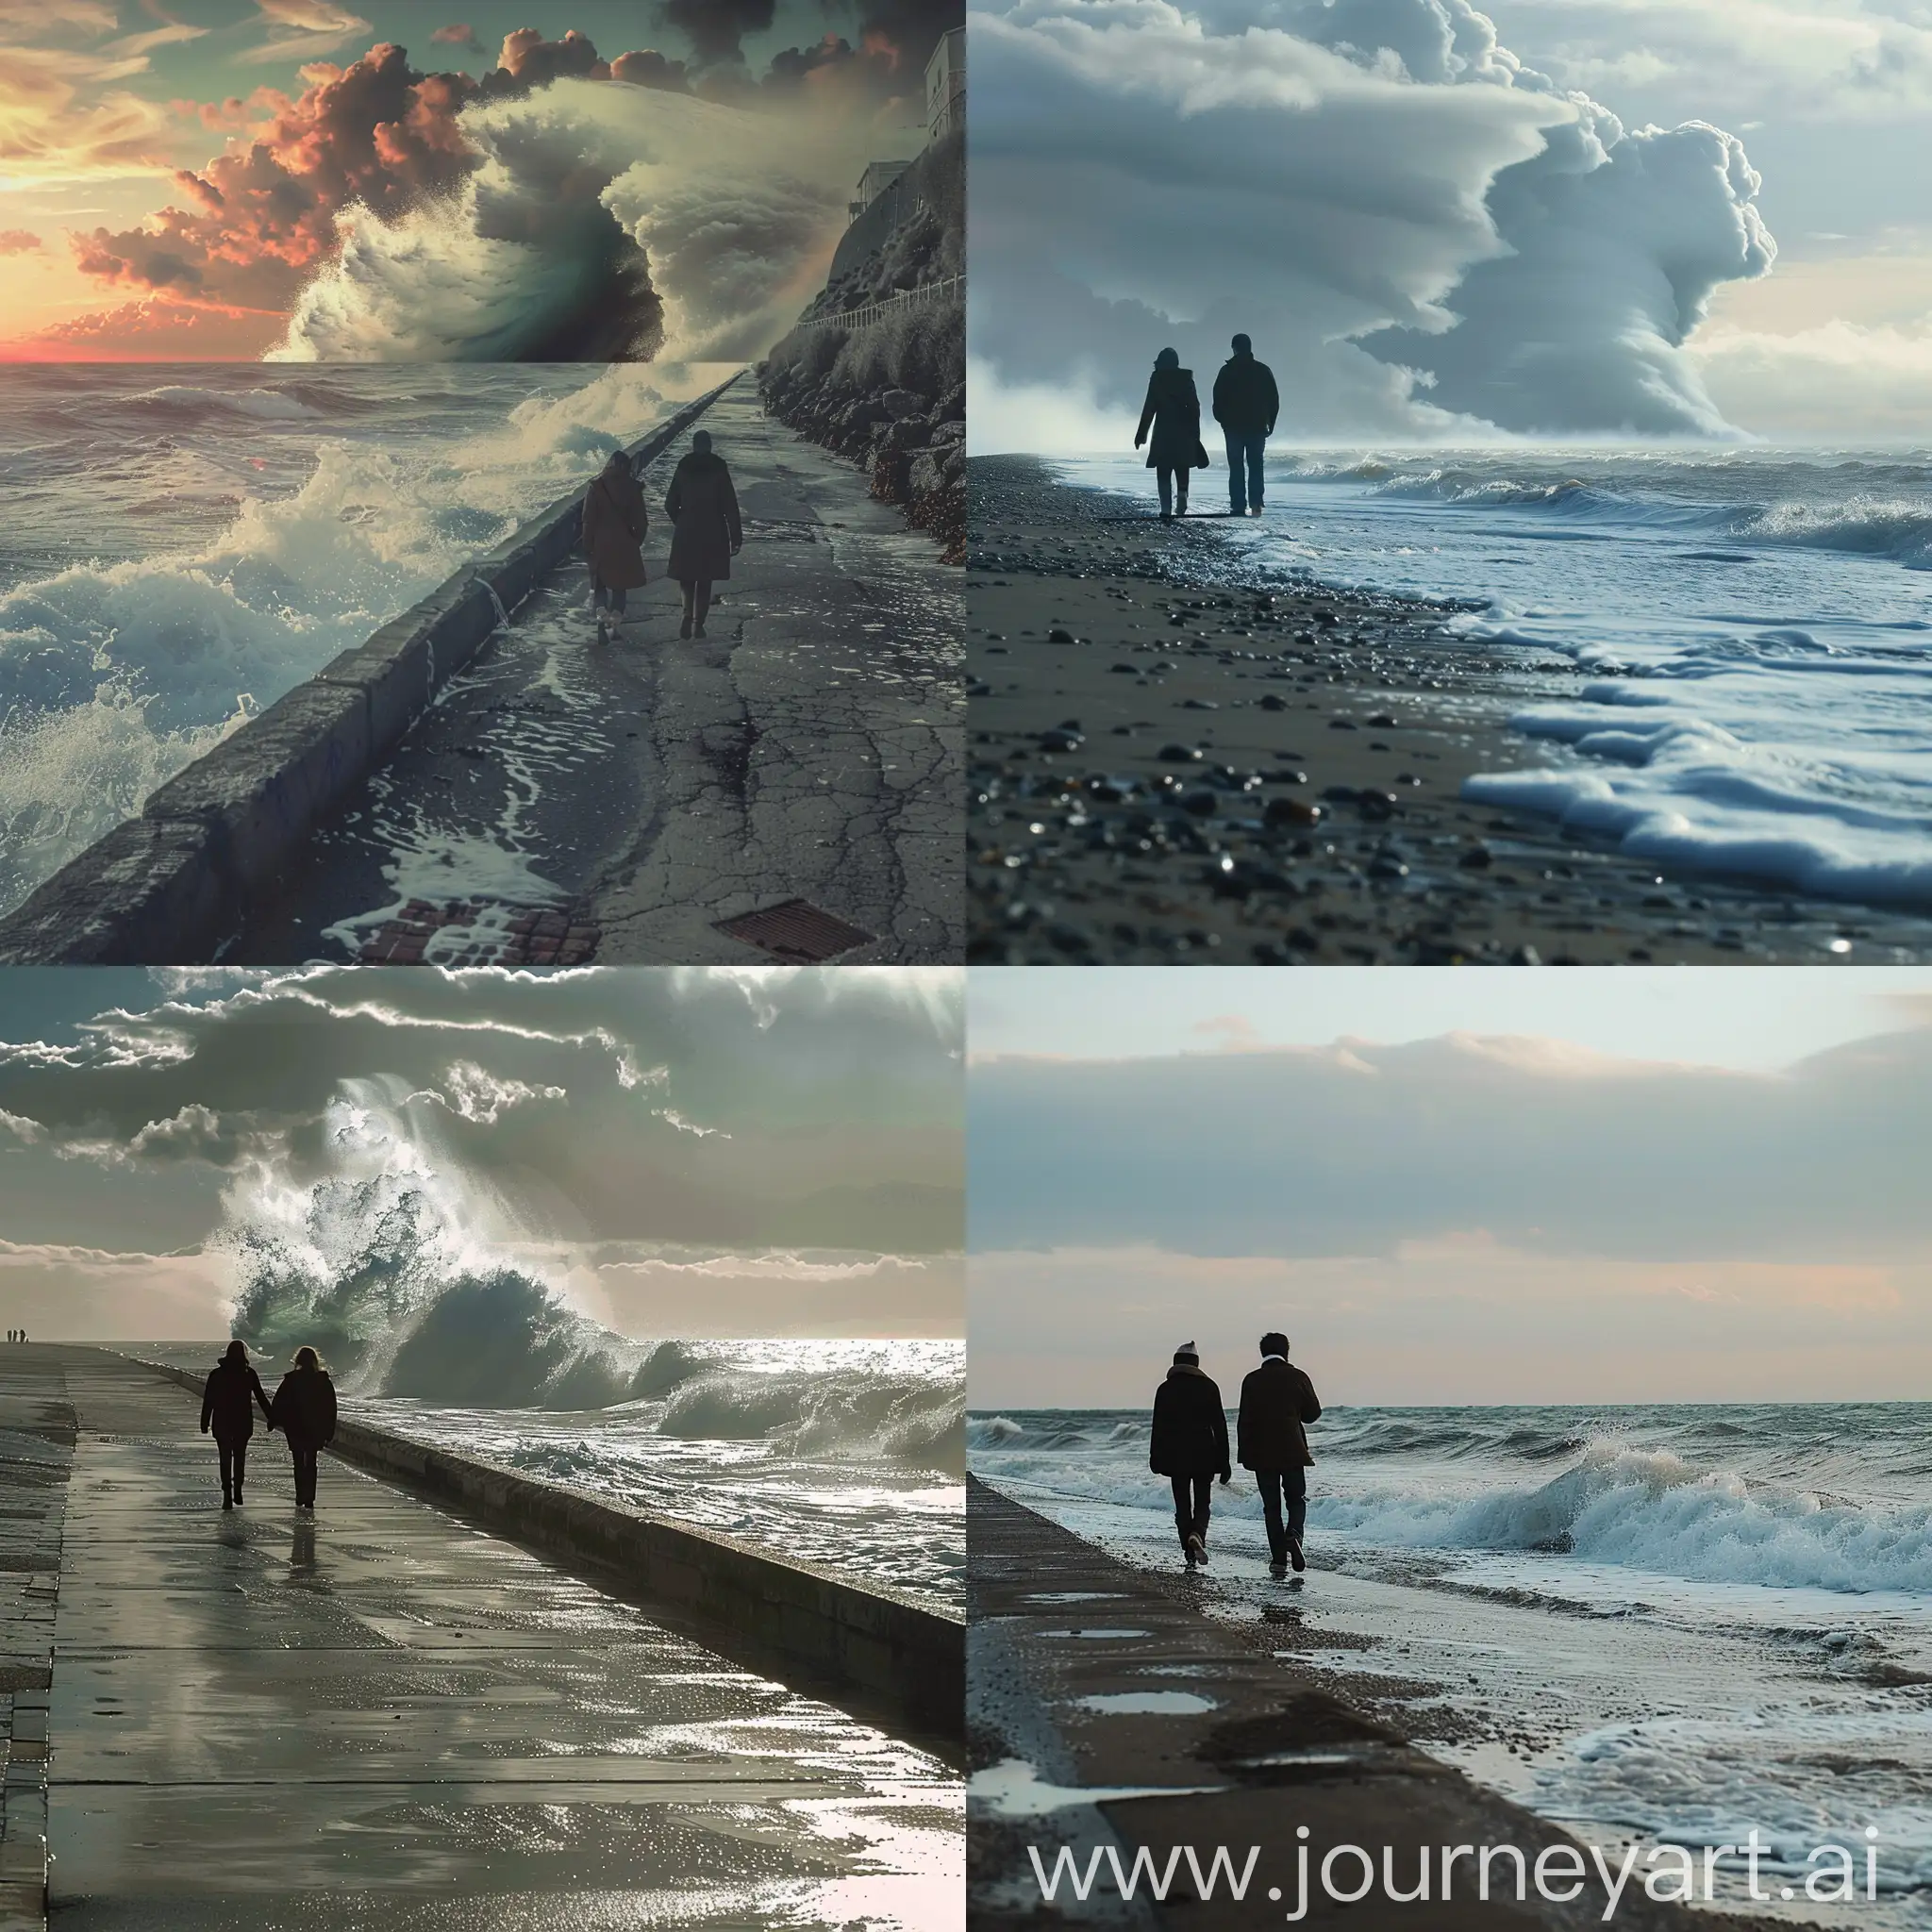 два человека гуляют по набережной океана в момент, когда на горизонте видно цунами